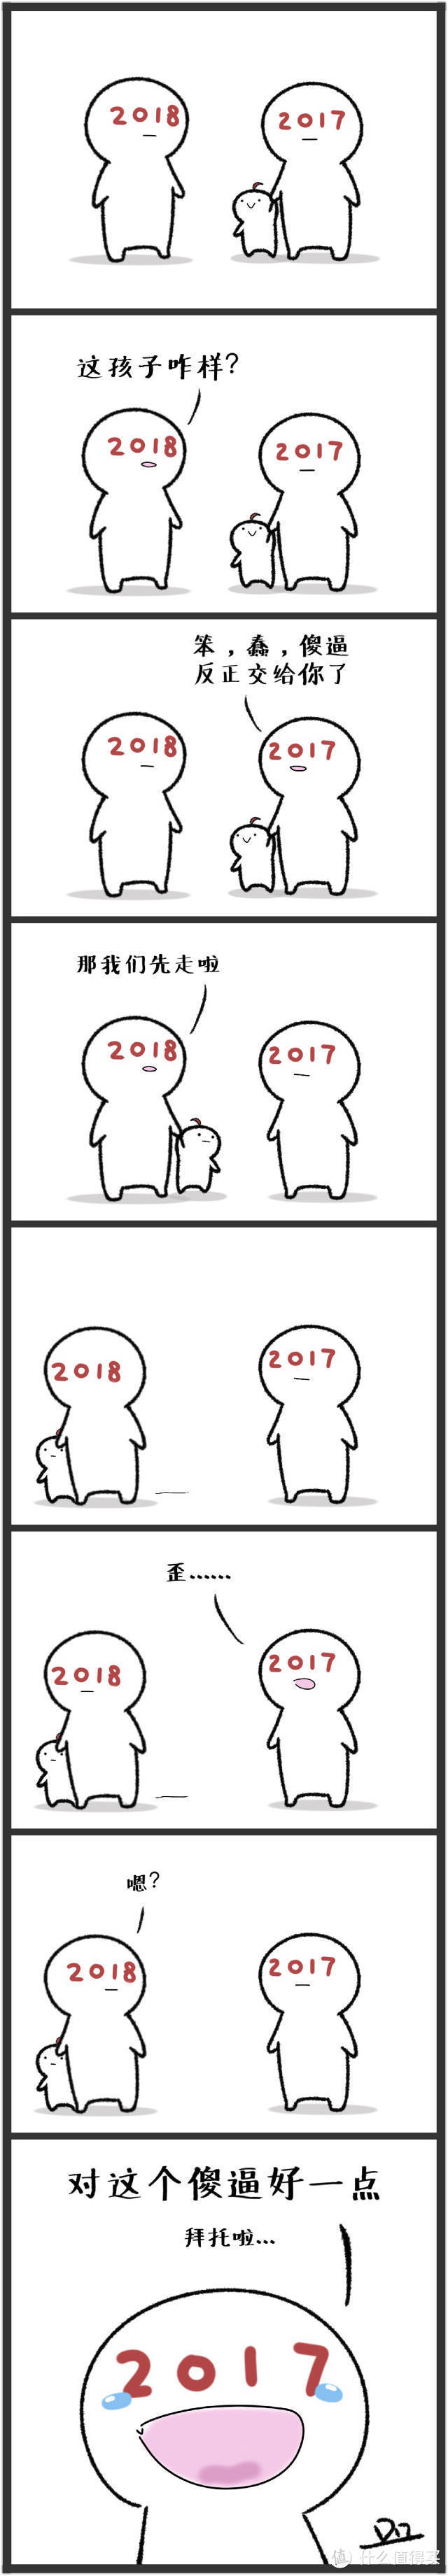 2018快乐